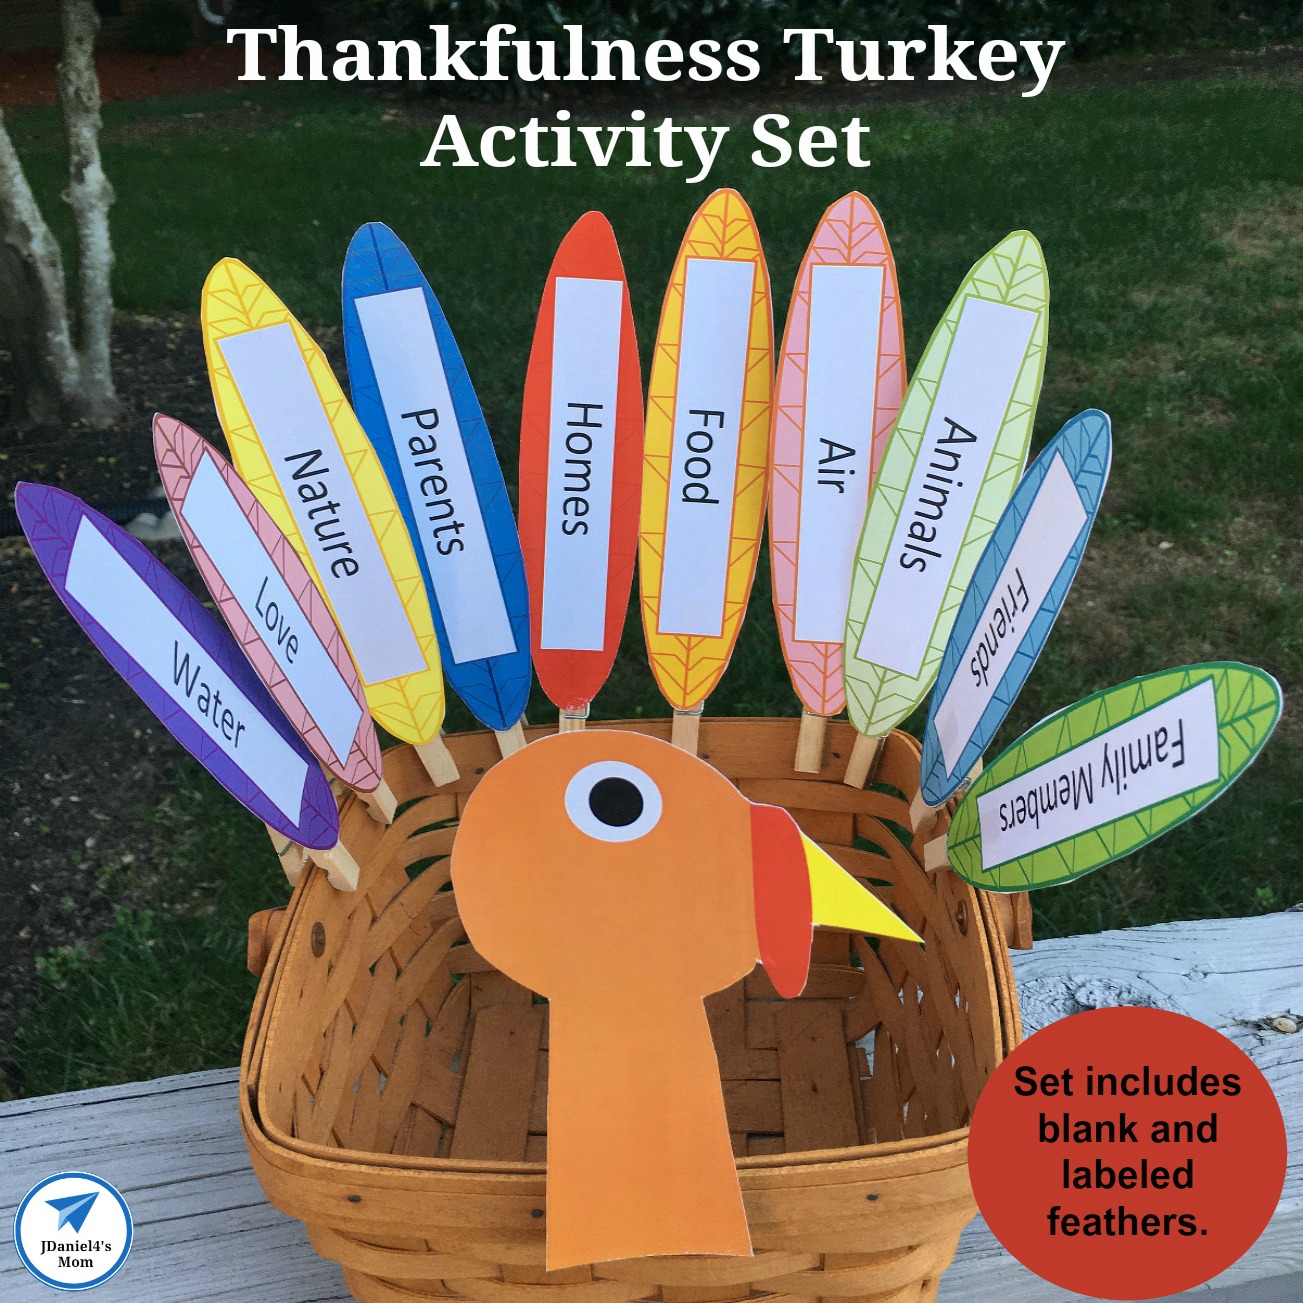 Thankfulness Turkey Activity Set